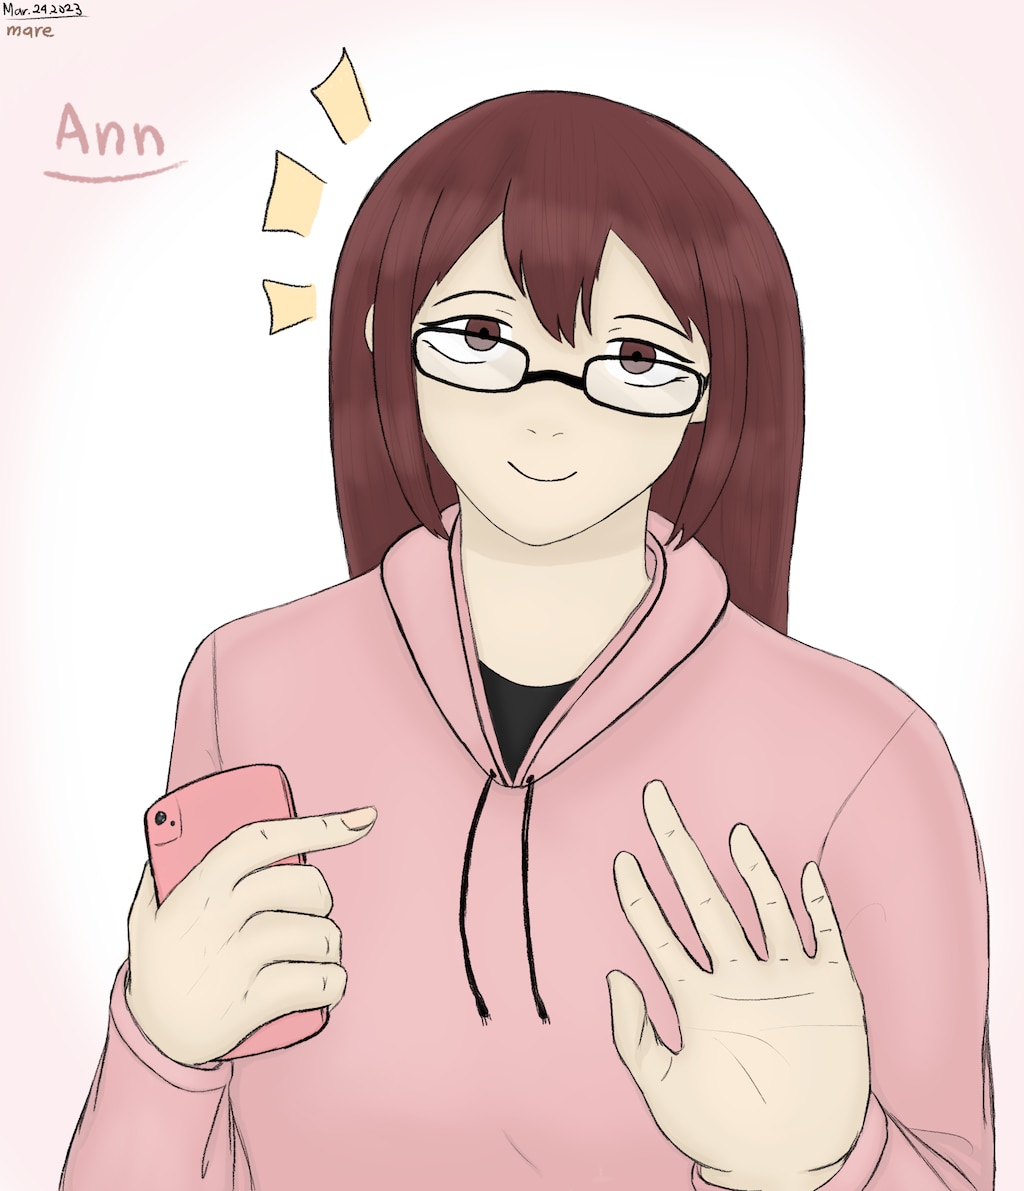 Ann on Steam